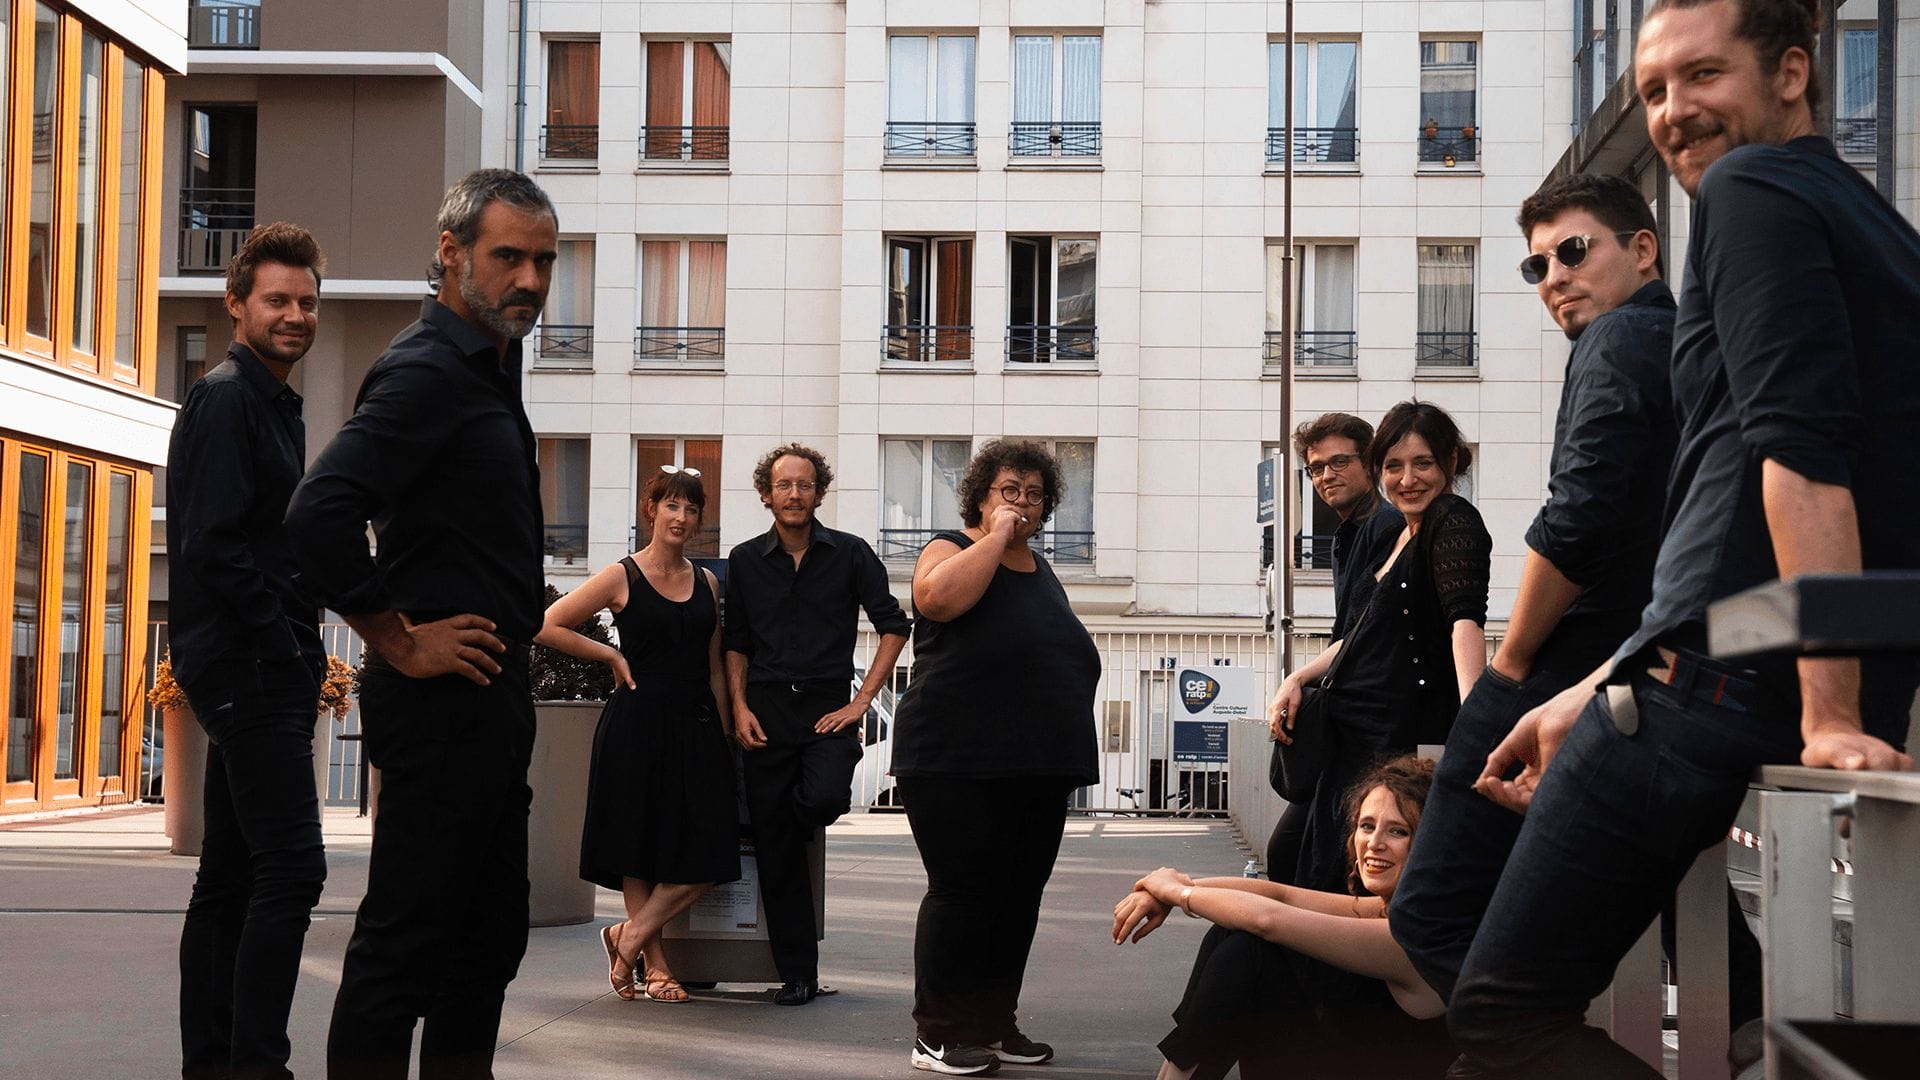 Juliette et l’orchestre de tango silbando - espace Ronny Coutteure - Grenay - Artoiscope